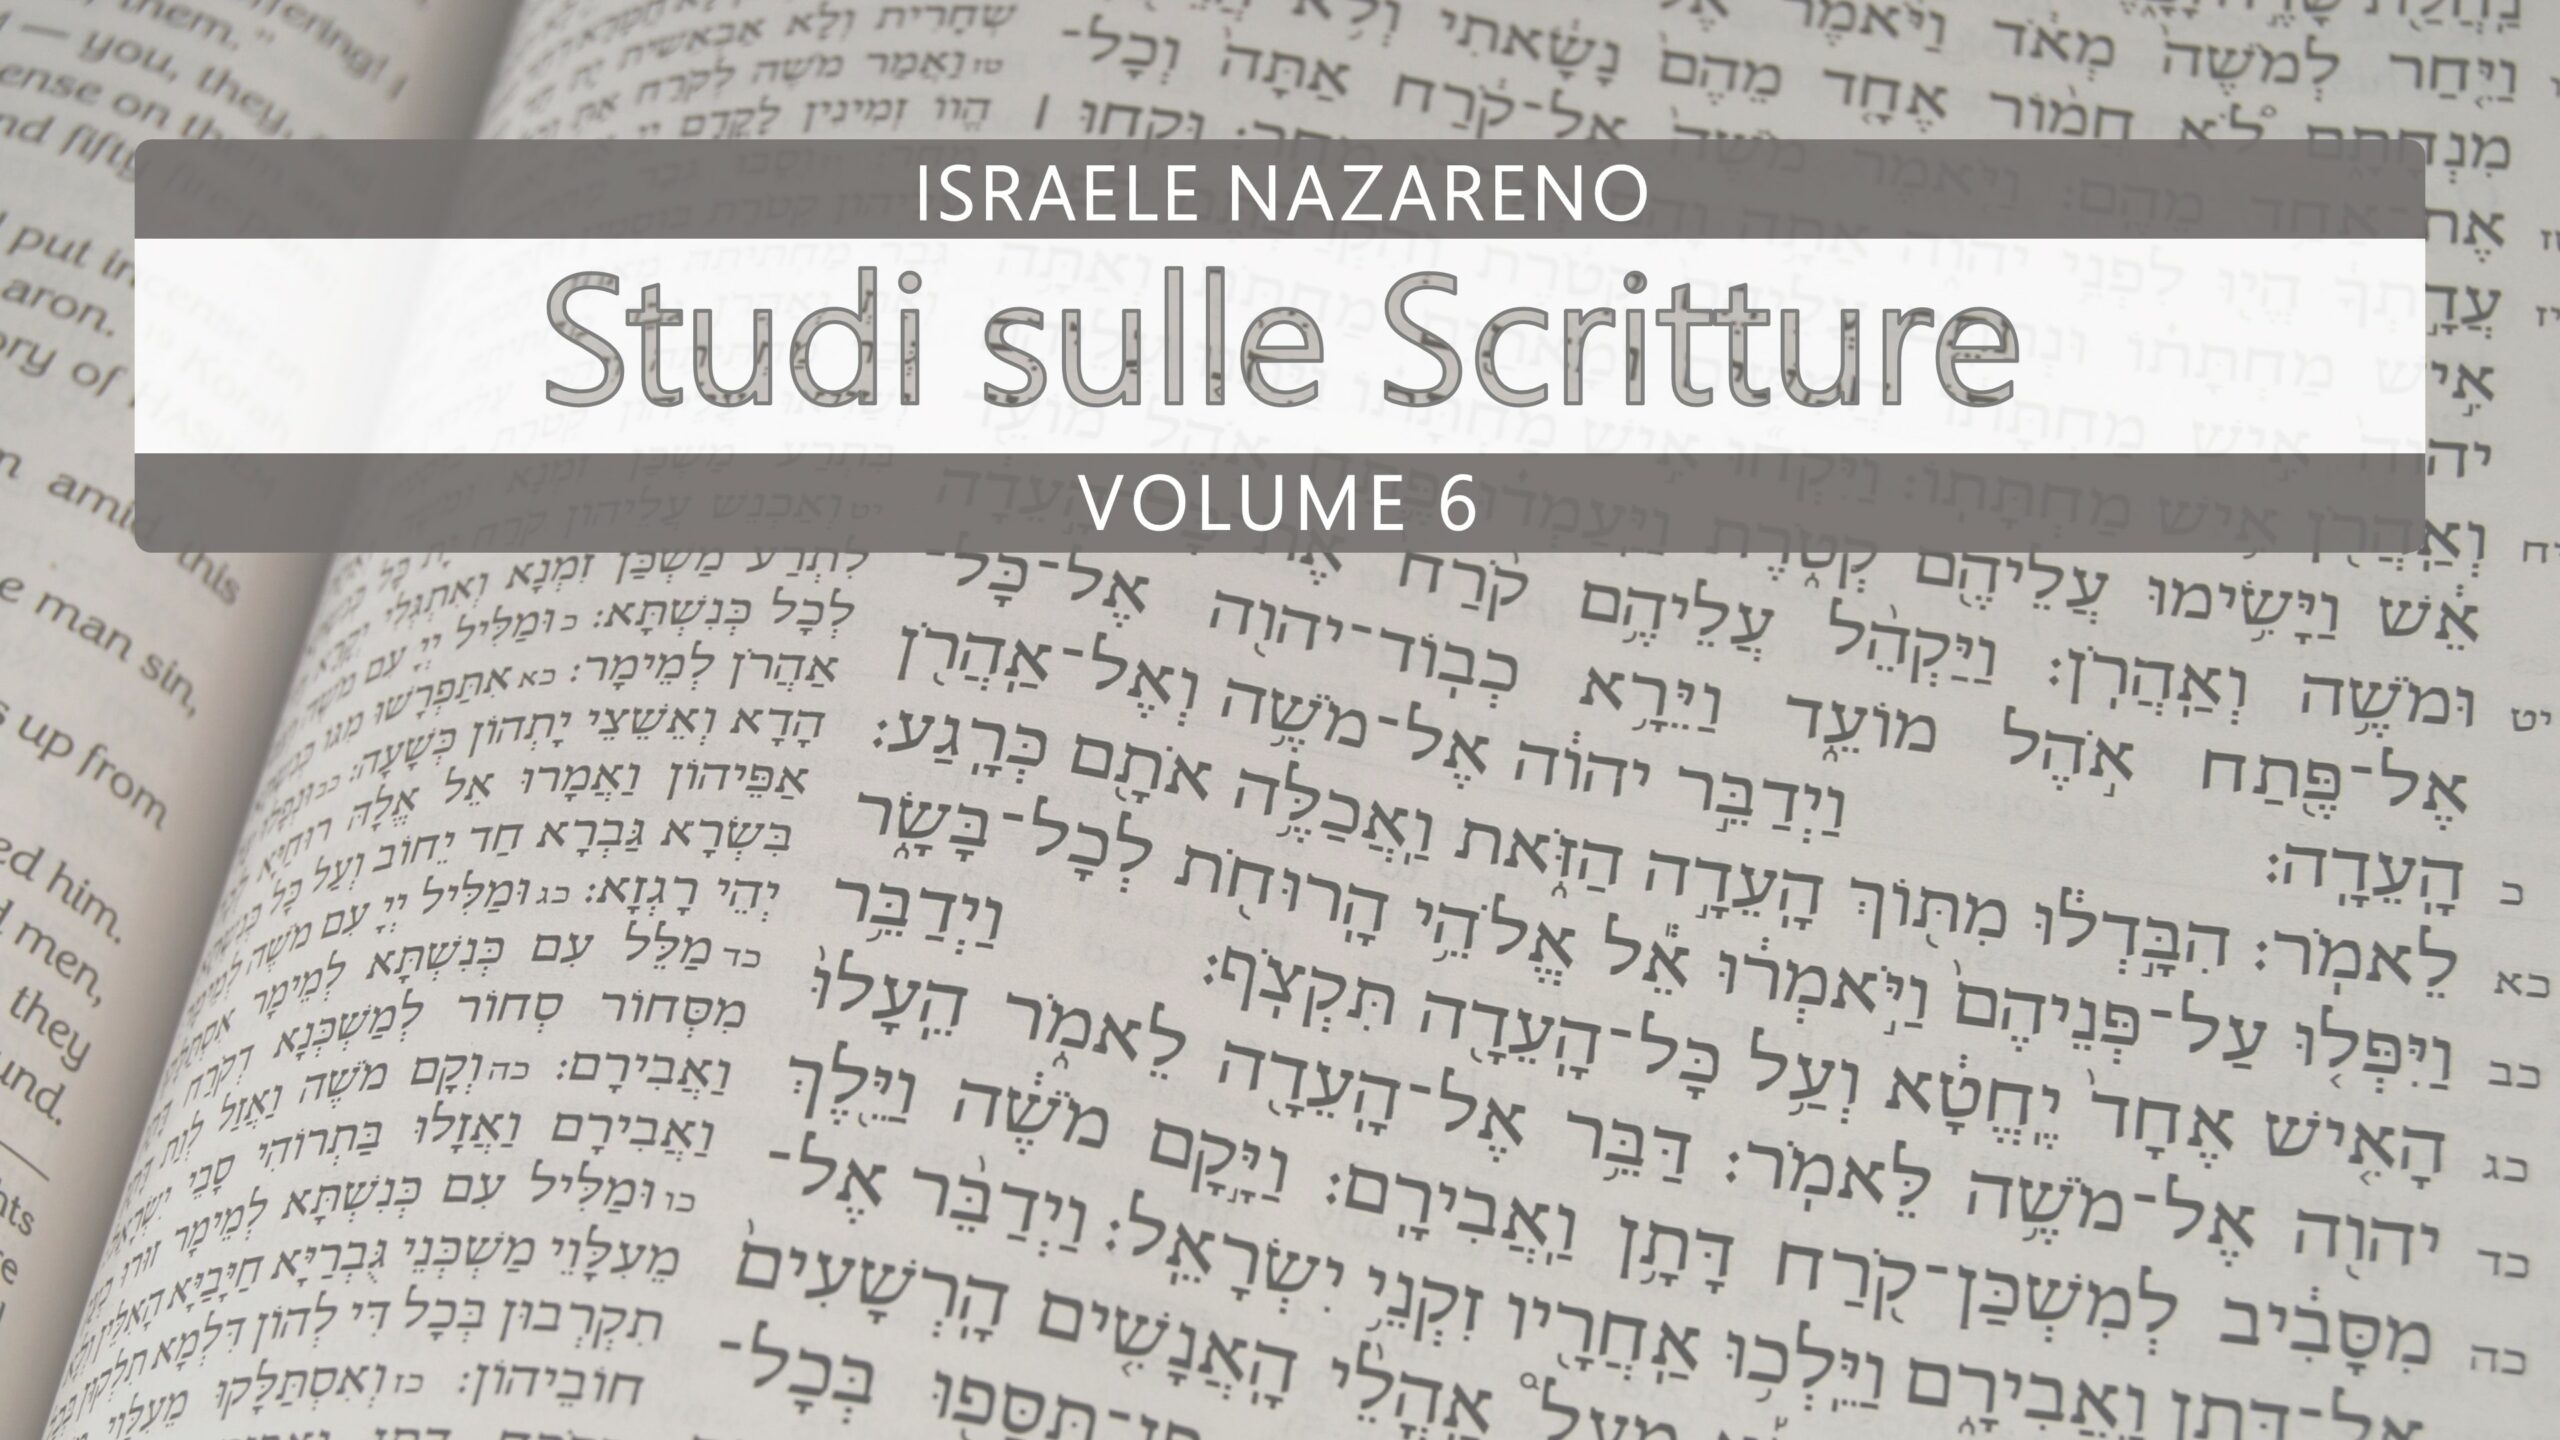 Nazarene Scripture Studies Vol. 6